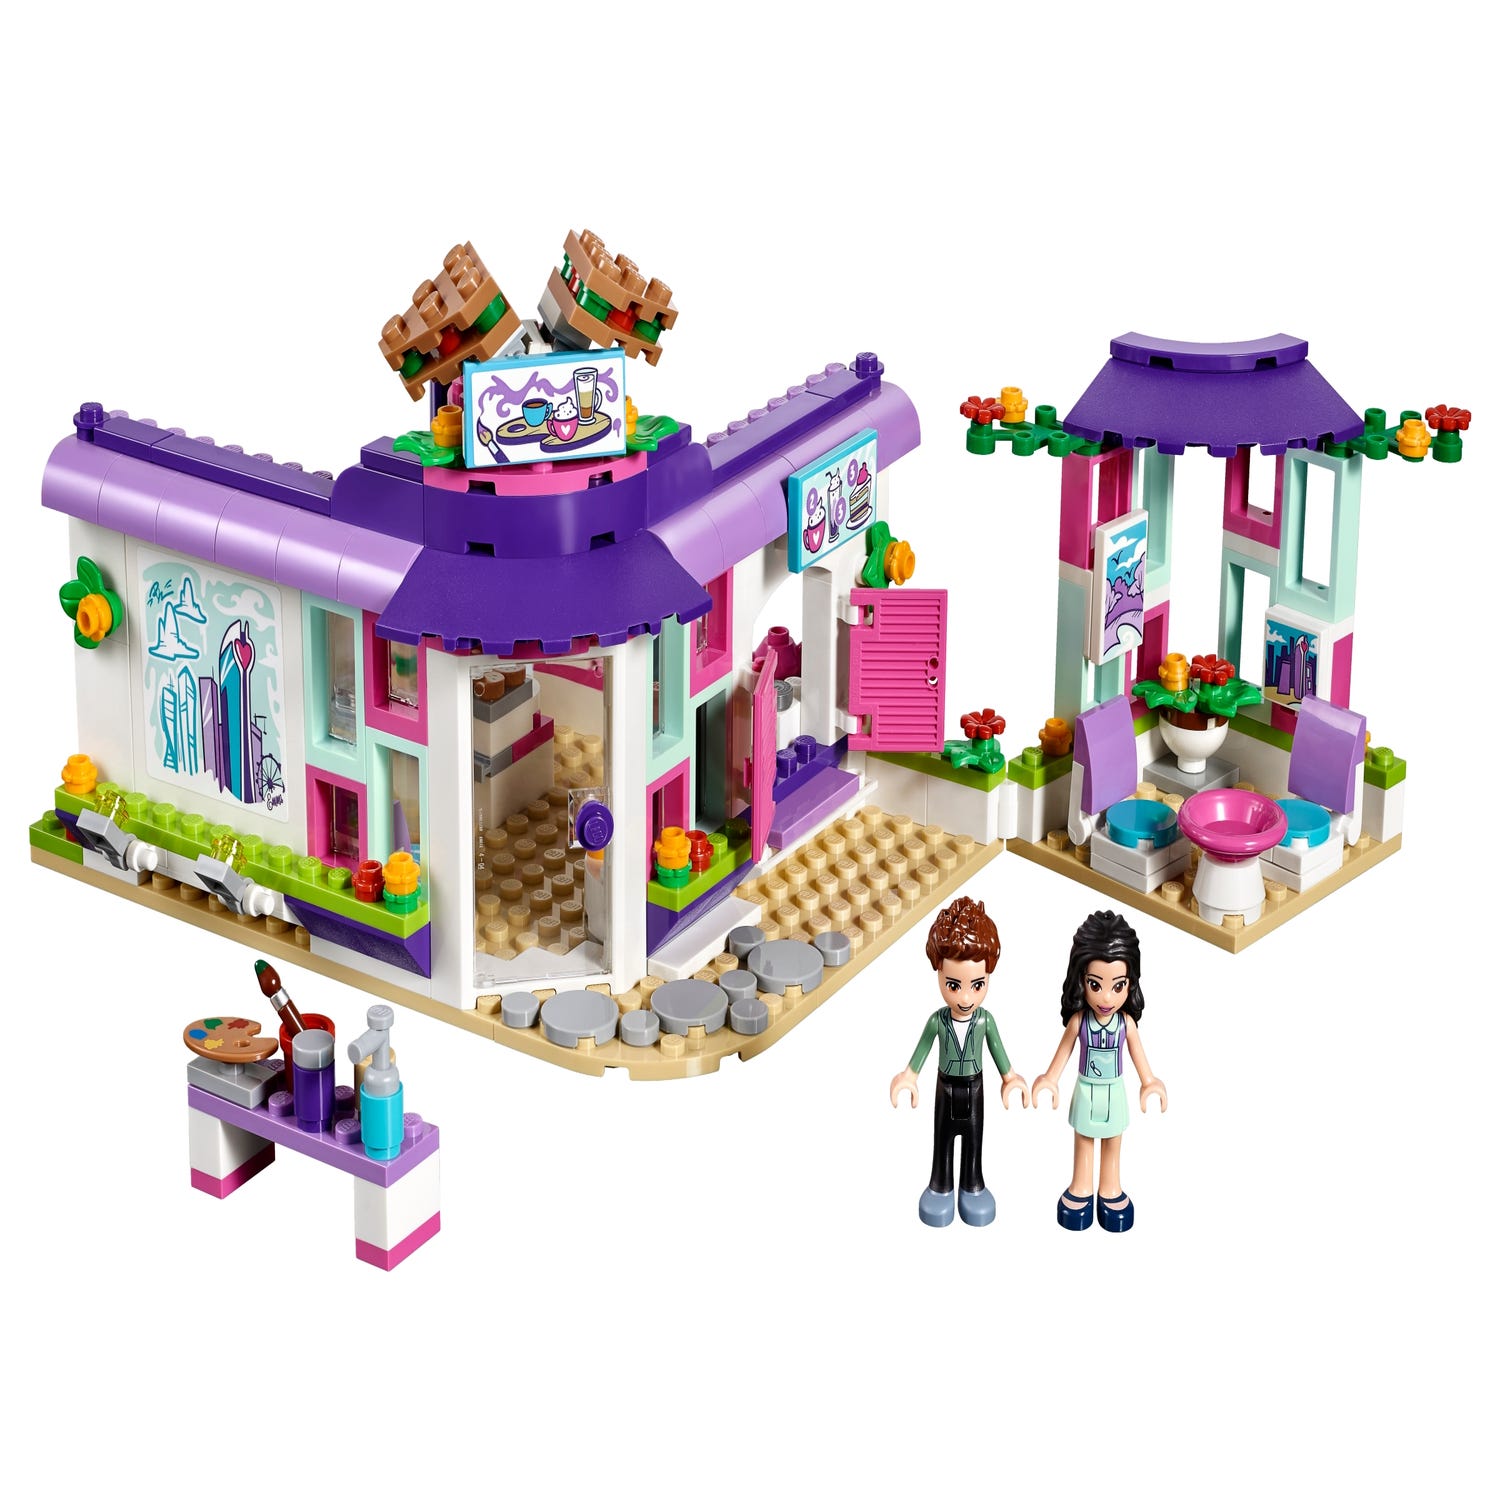 Café 41336 | Friends | Buy online at the Official LEGO® Shop